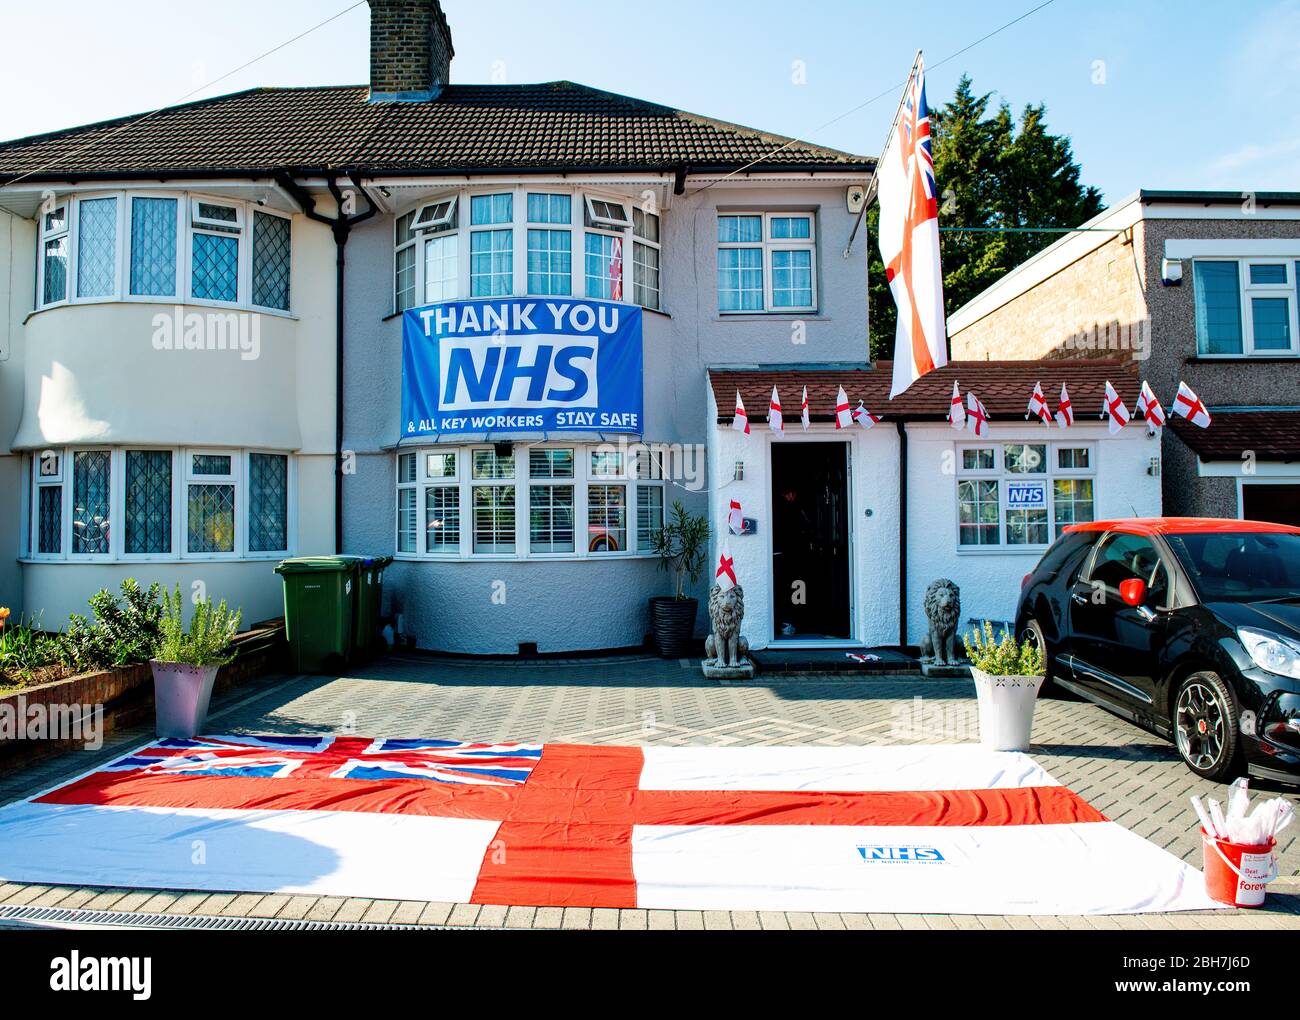 Grande bandiera e bandiera di fronte a casa ringraziando il NHS e tutti i principali lavoratori nel Regno Unito, durante la crisi pandemica di Covid-19/Coronavirus. Foto Stock